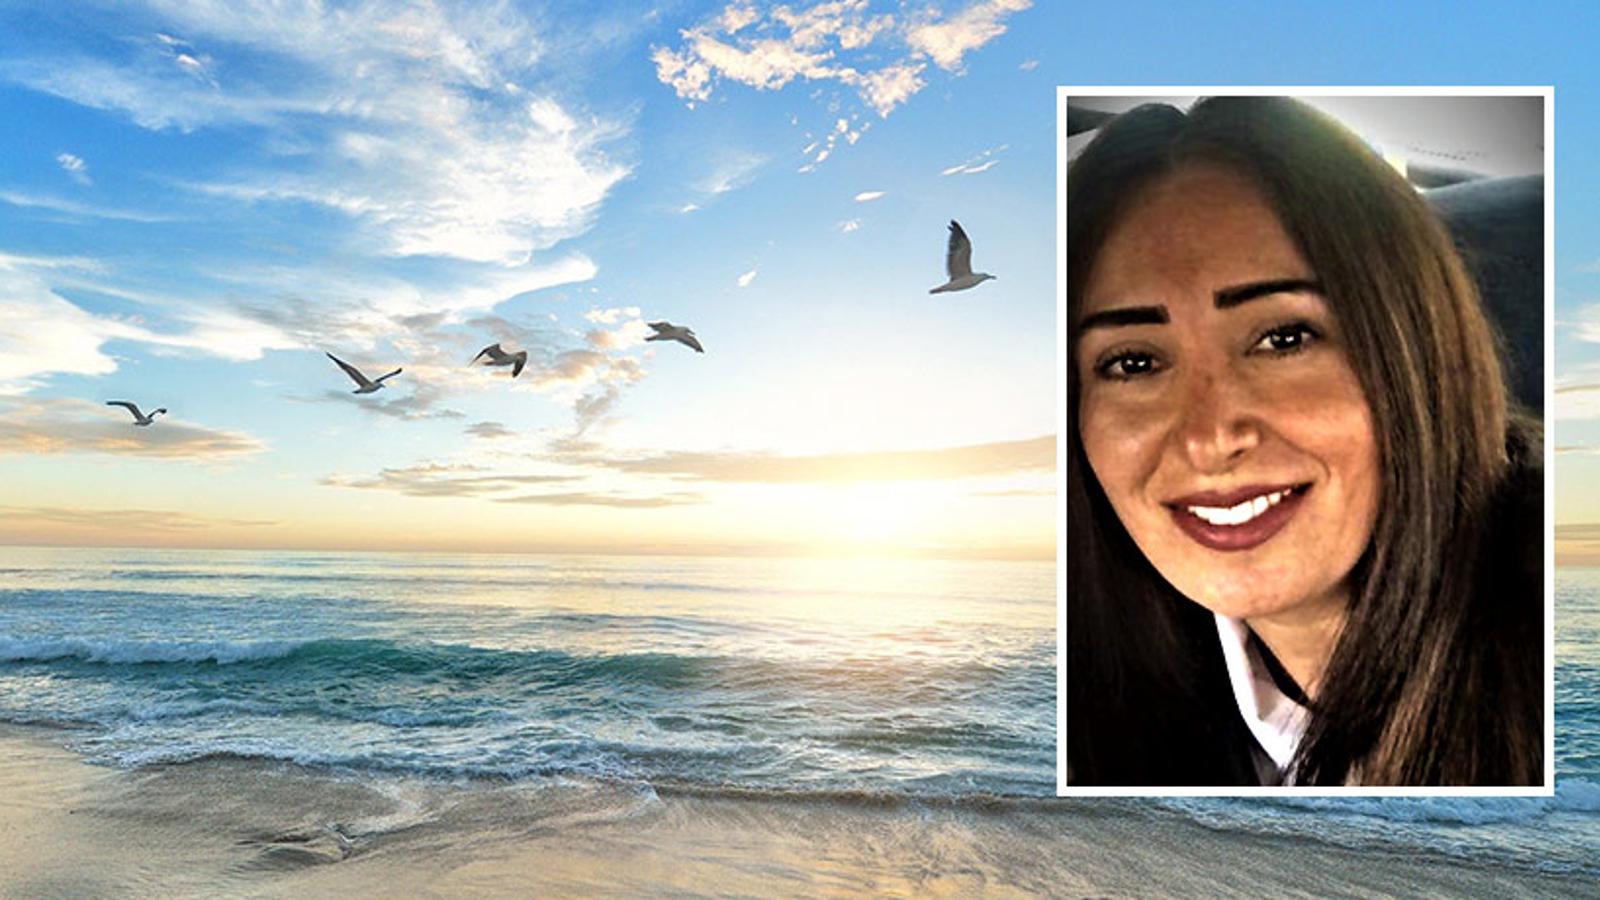 Till vänster: En sandstrand med några fåglar som flyger ovanför havet. Till höger: Porträttbild av Katherine Tepsi.